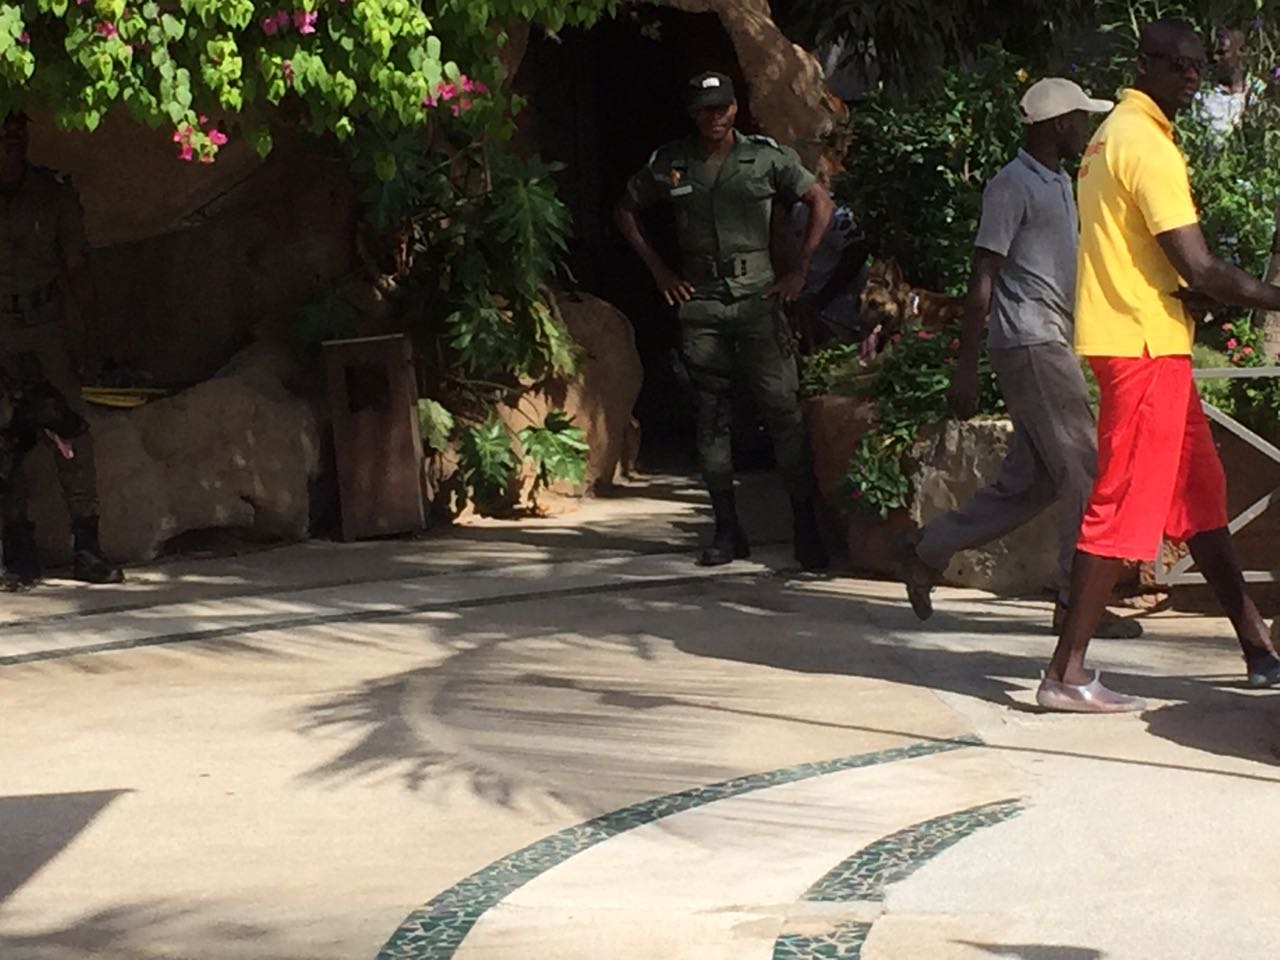 Point de presse du porte-parole d'Adama Barrow à Dakar cet après-midi : Sécurité maximale avec des chiens "policiers", les journalistes fouillés